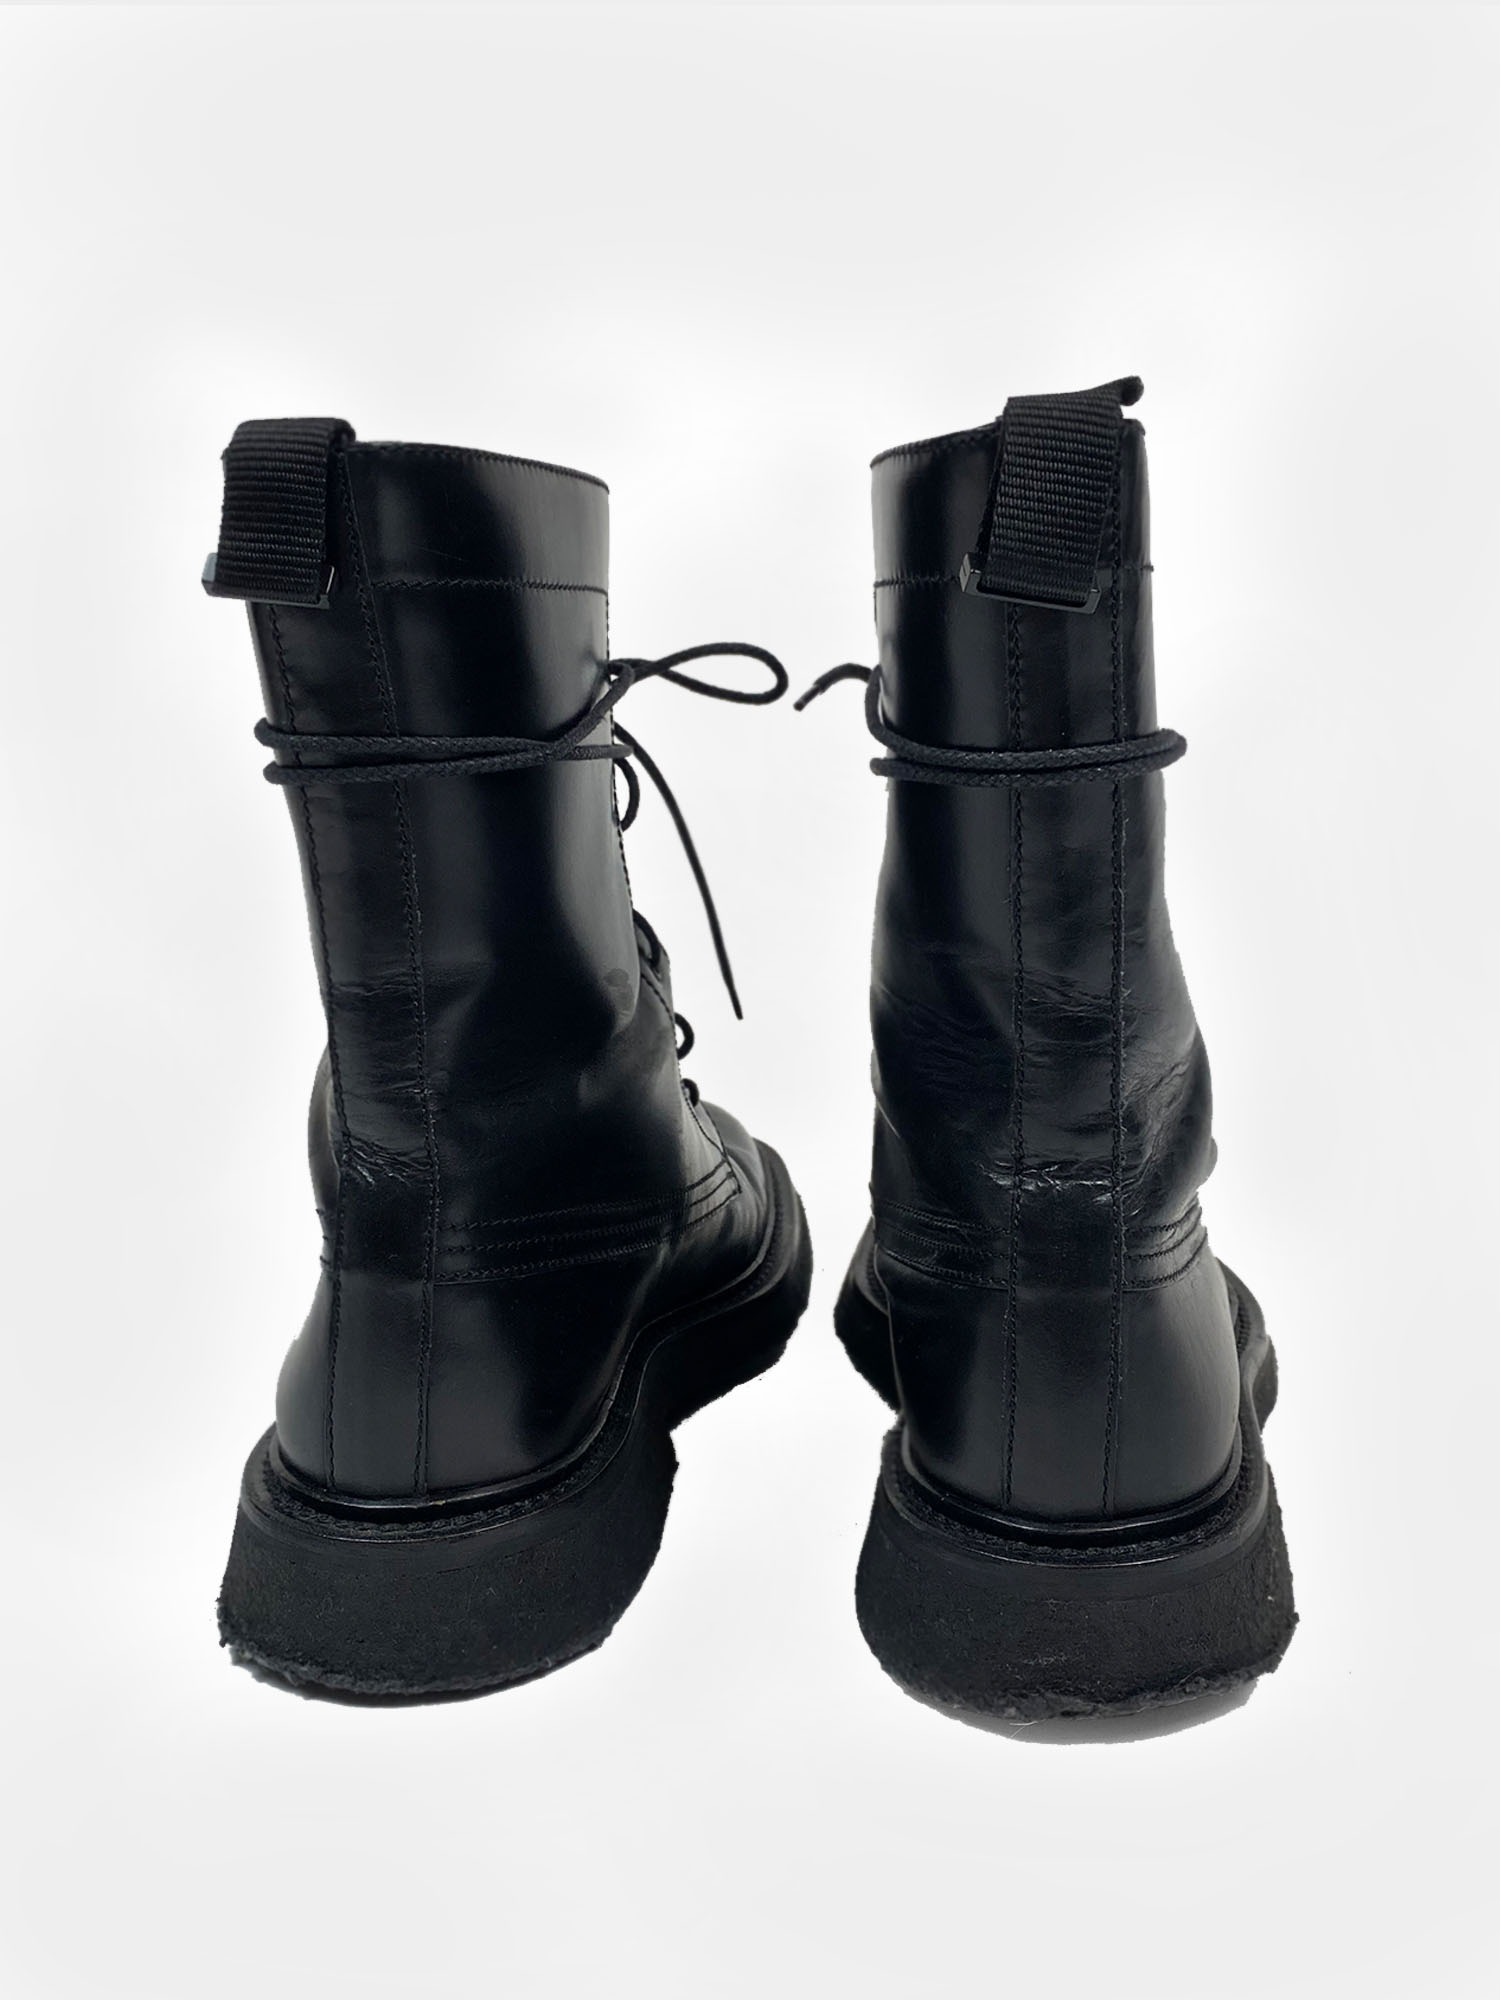 dior combat boots 2007